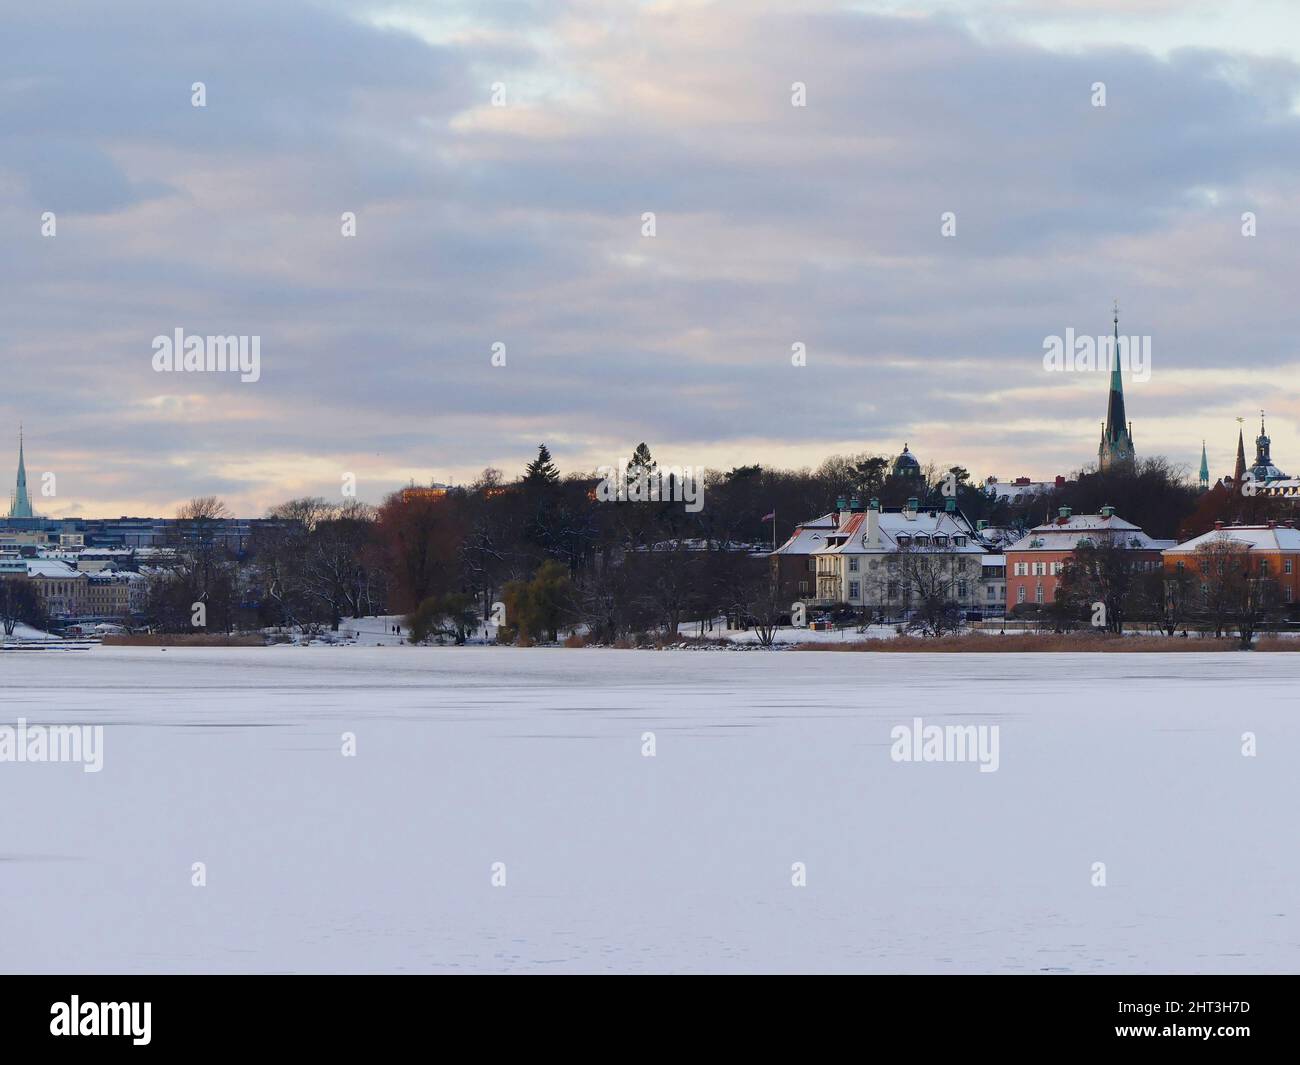 Stockholm city Stock Photo